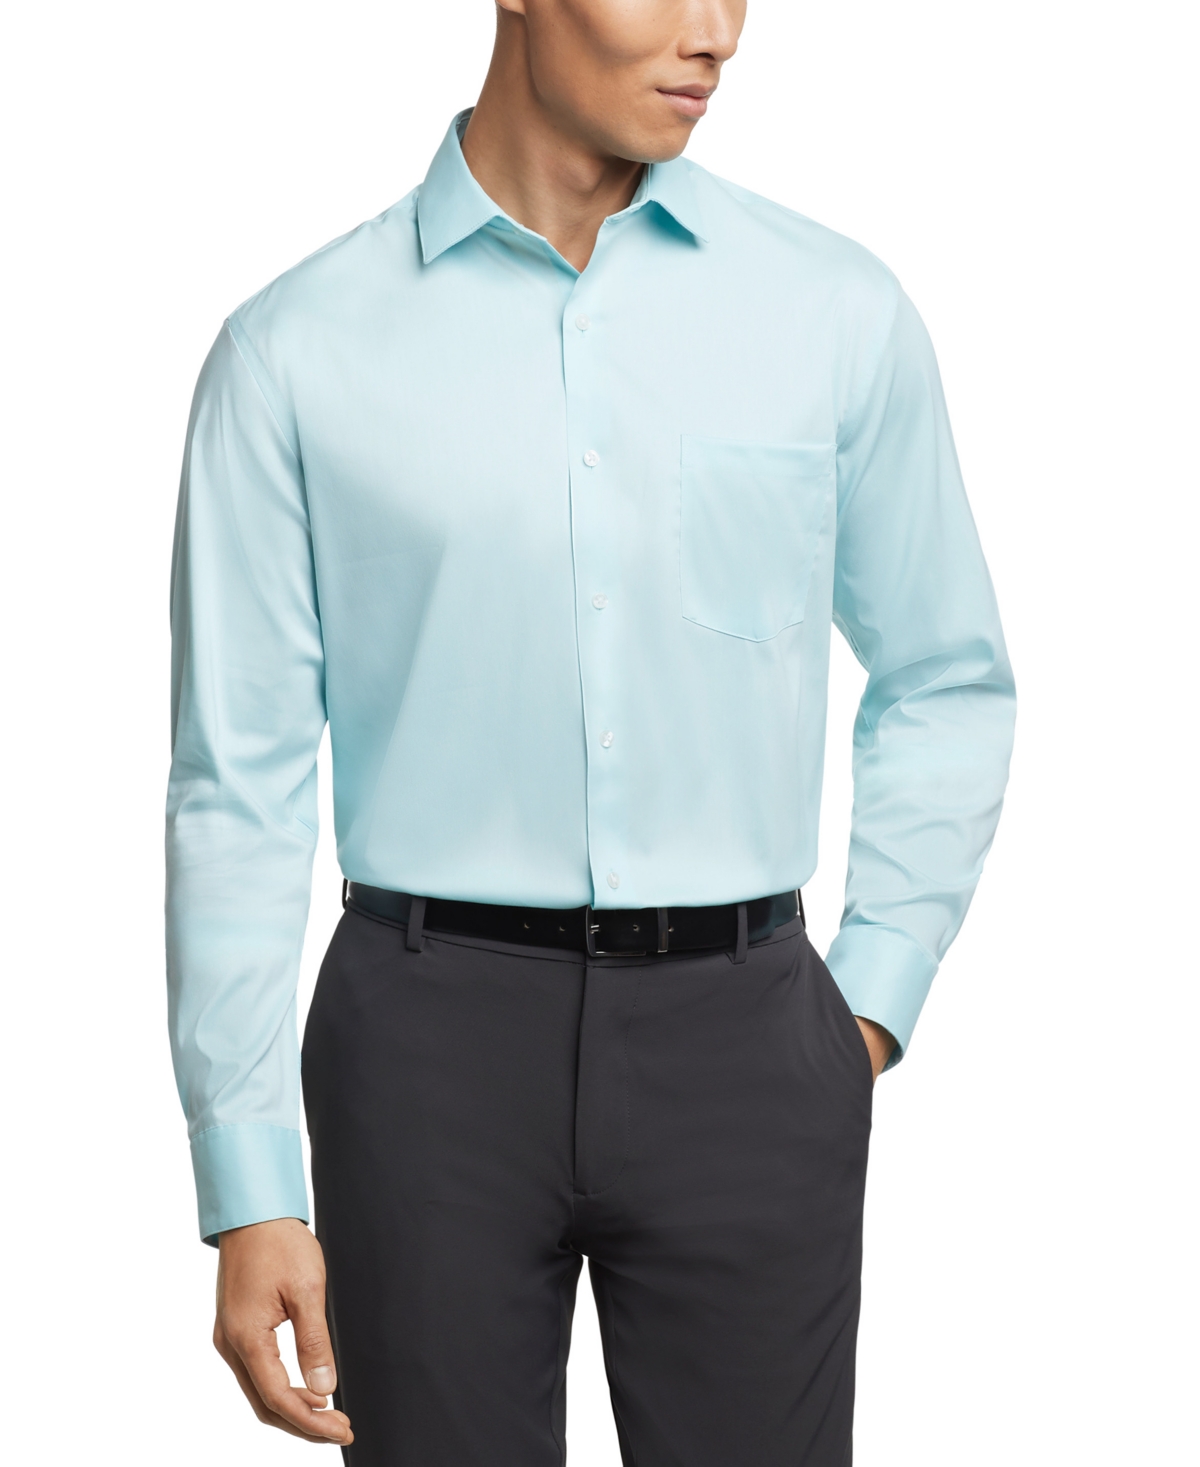 Men's Flex Collar Regular Fit Dress Shirt - Pale Pink